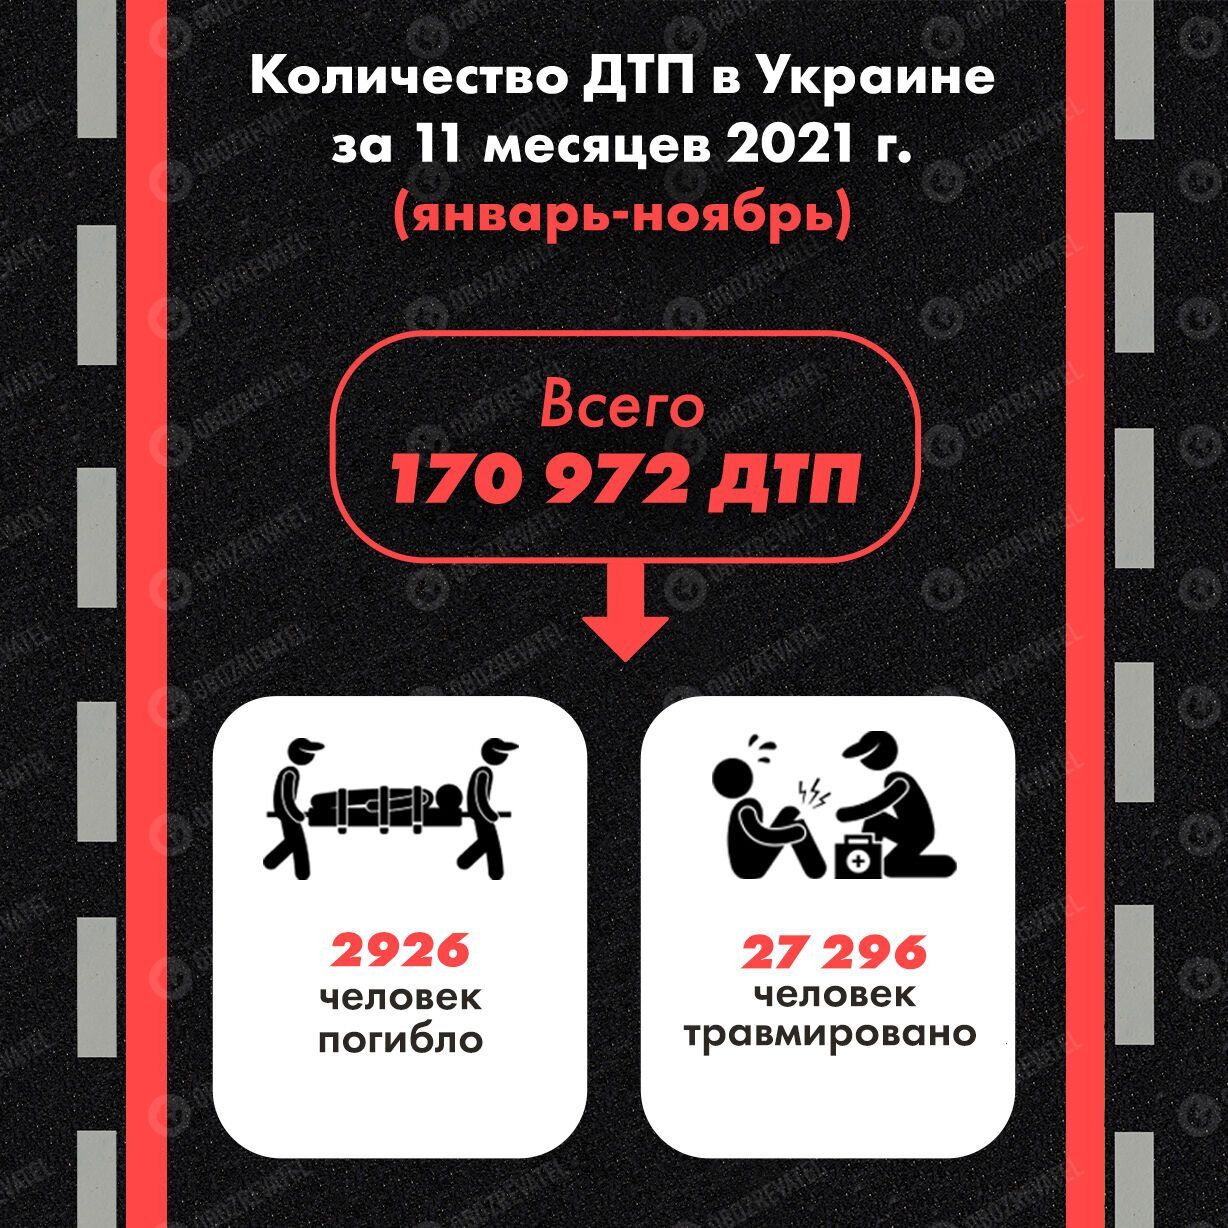 За 11 месяцев 2021 года в Украине произошло 170 972 ДТП